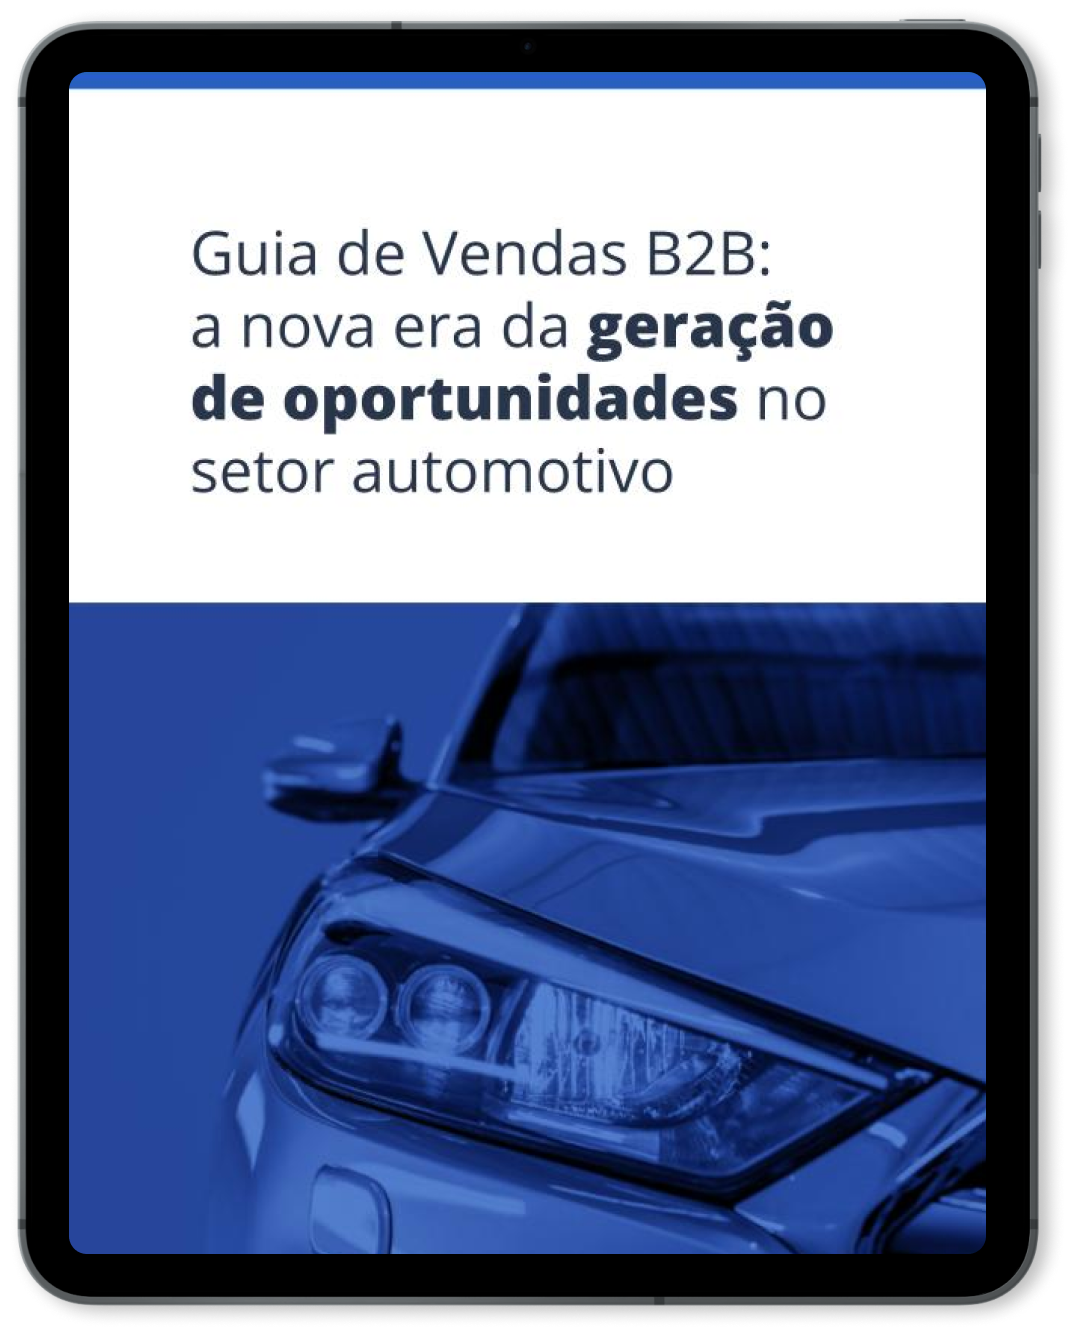 template-lp-ebook-abm-guia-de-vendas-b2b-automotivo